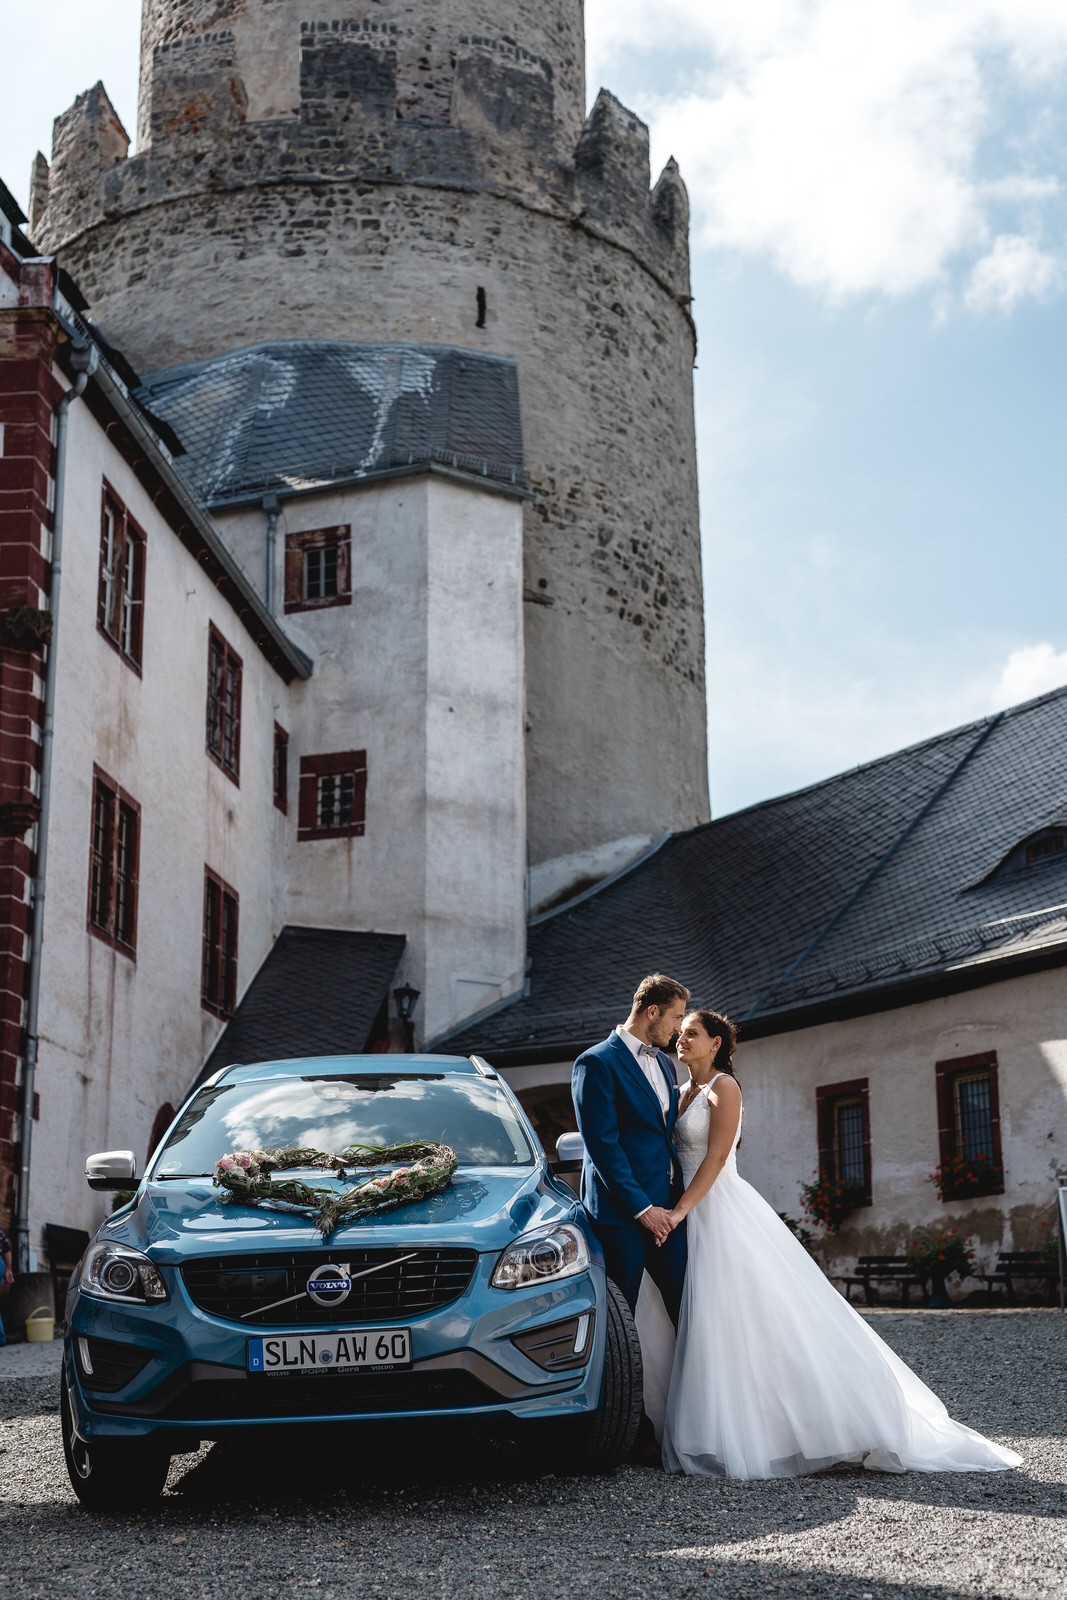 Hochzeitspaar mit Brautauto Volvo geschmückt mit Autoschmuck auf Osterburg Weida beim Paarshoot